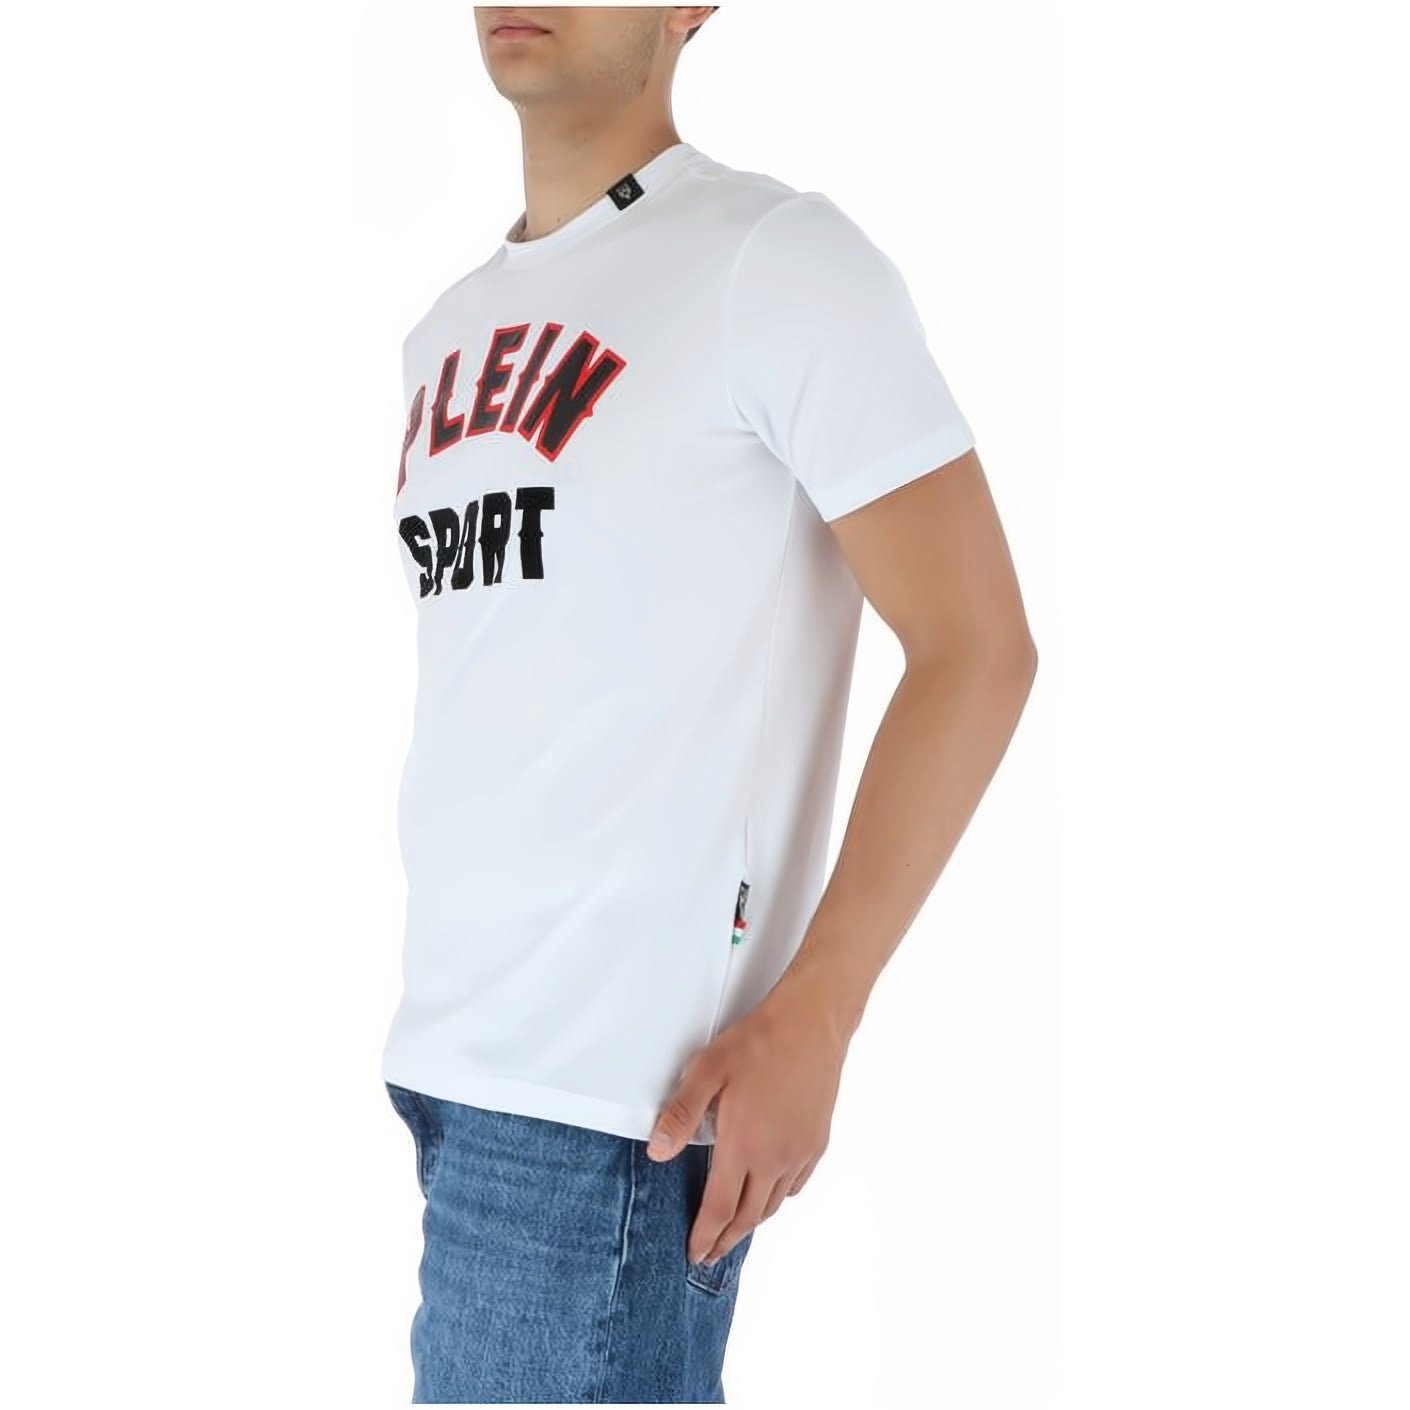 SPORT ROUND Farbauswahl T-Shirt hoher NECK vielfältige PLEIN Tragekomfort, Look, Stylischer